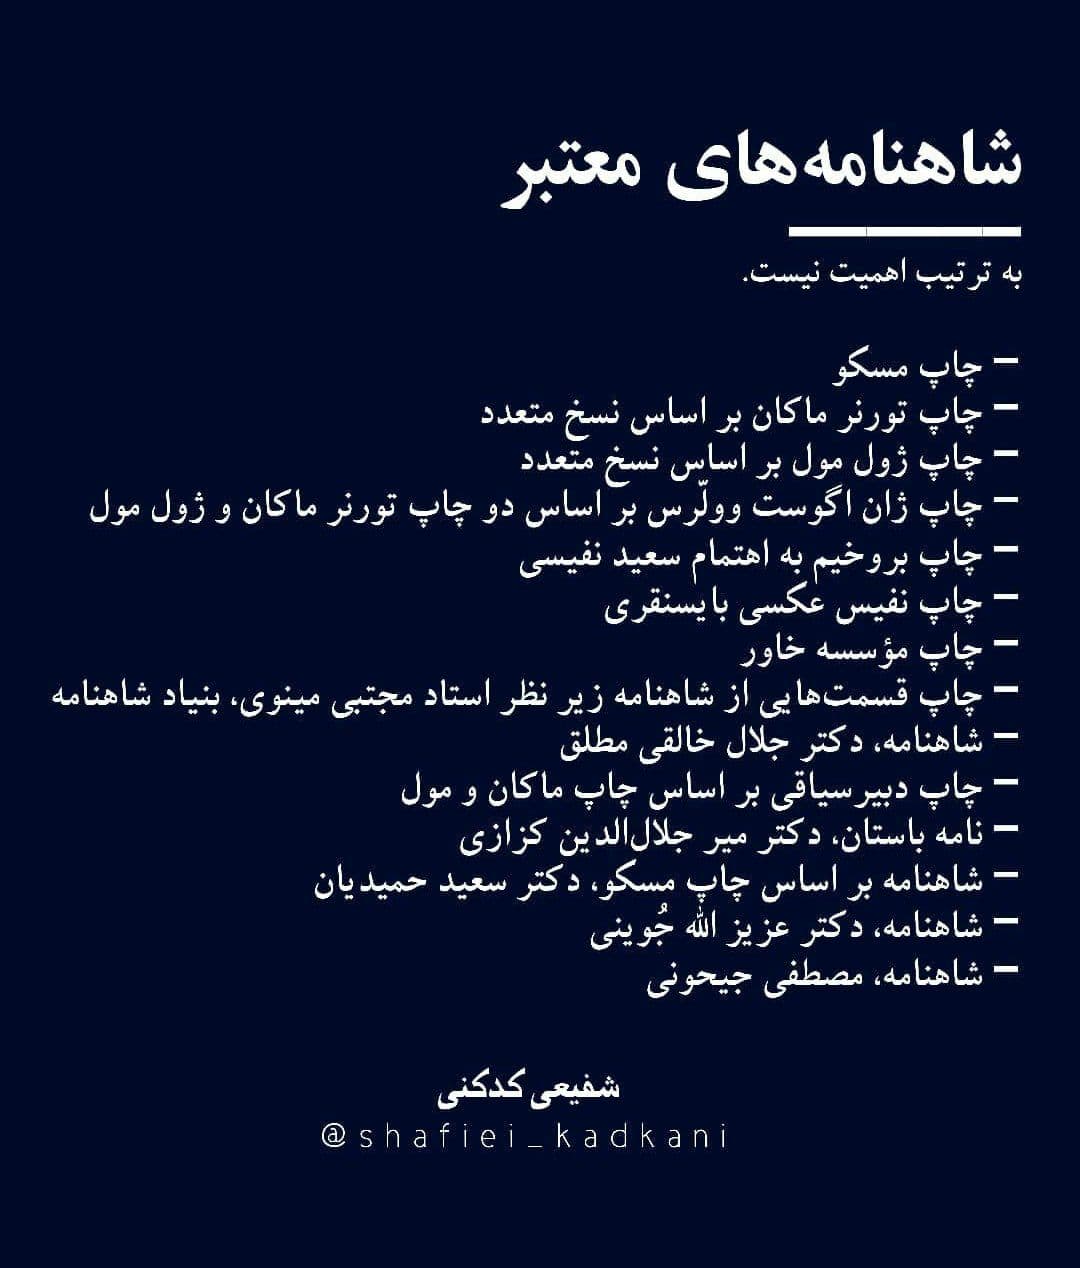 صفحه مجازی استاد شفیعی کدکنی بخش تازه‌ای درباره جعلیات در زبان فارسی راه انداخته است